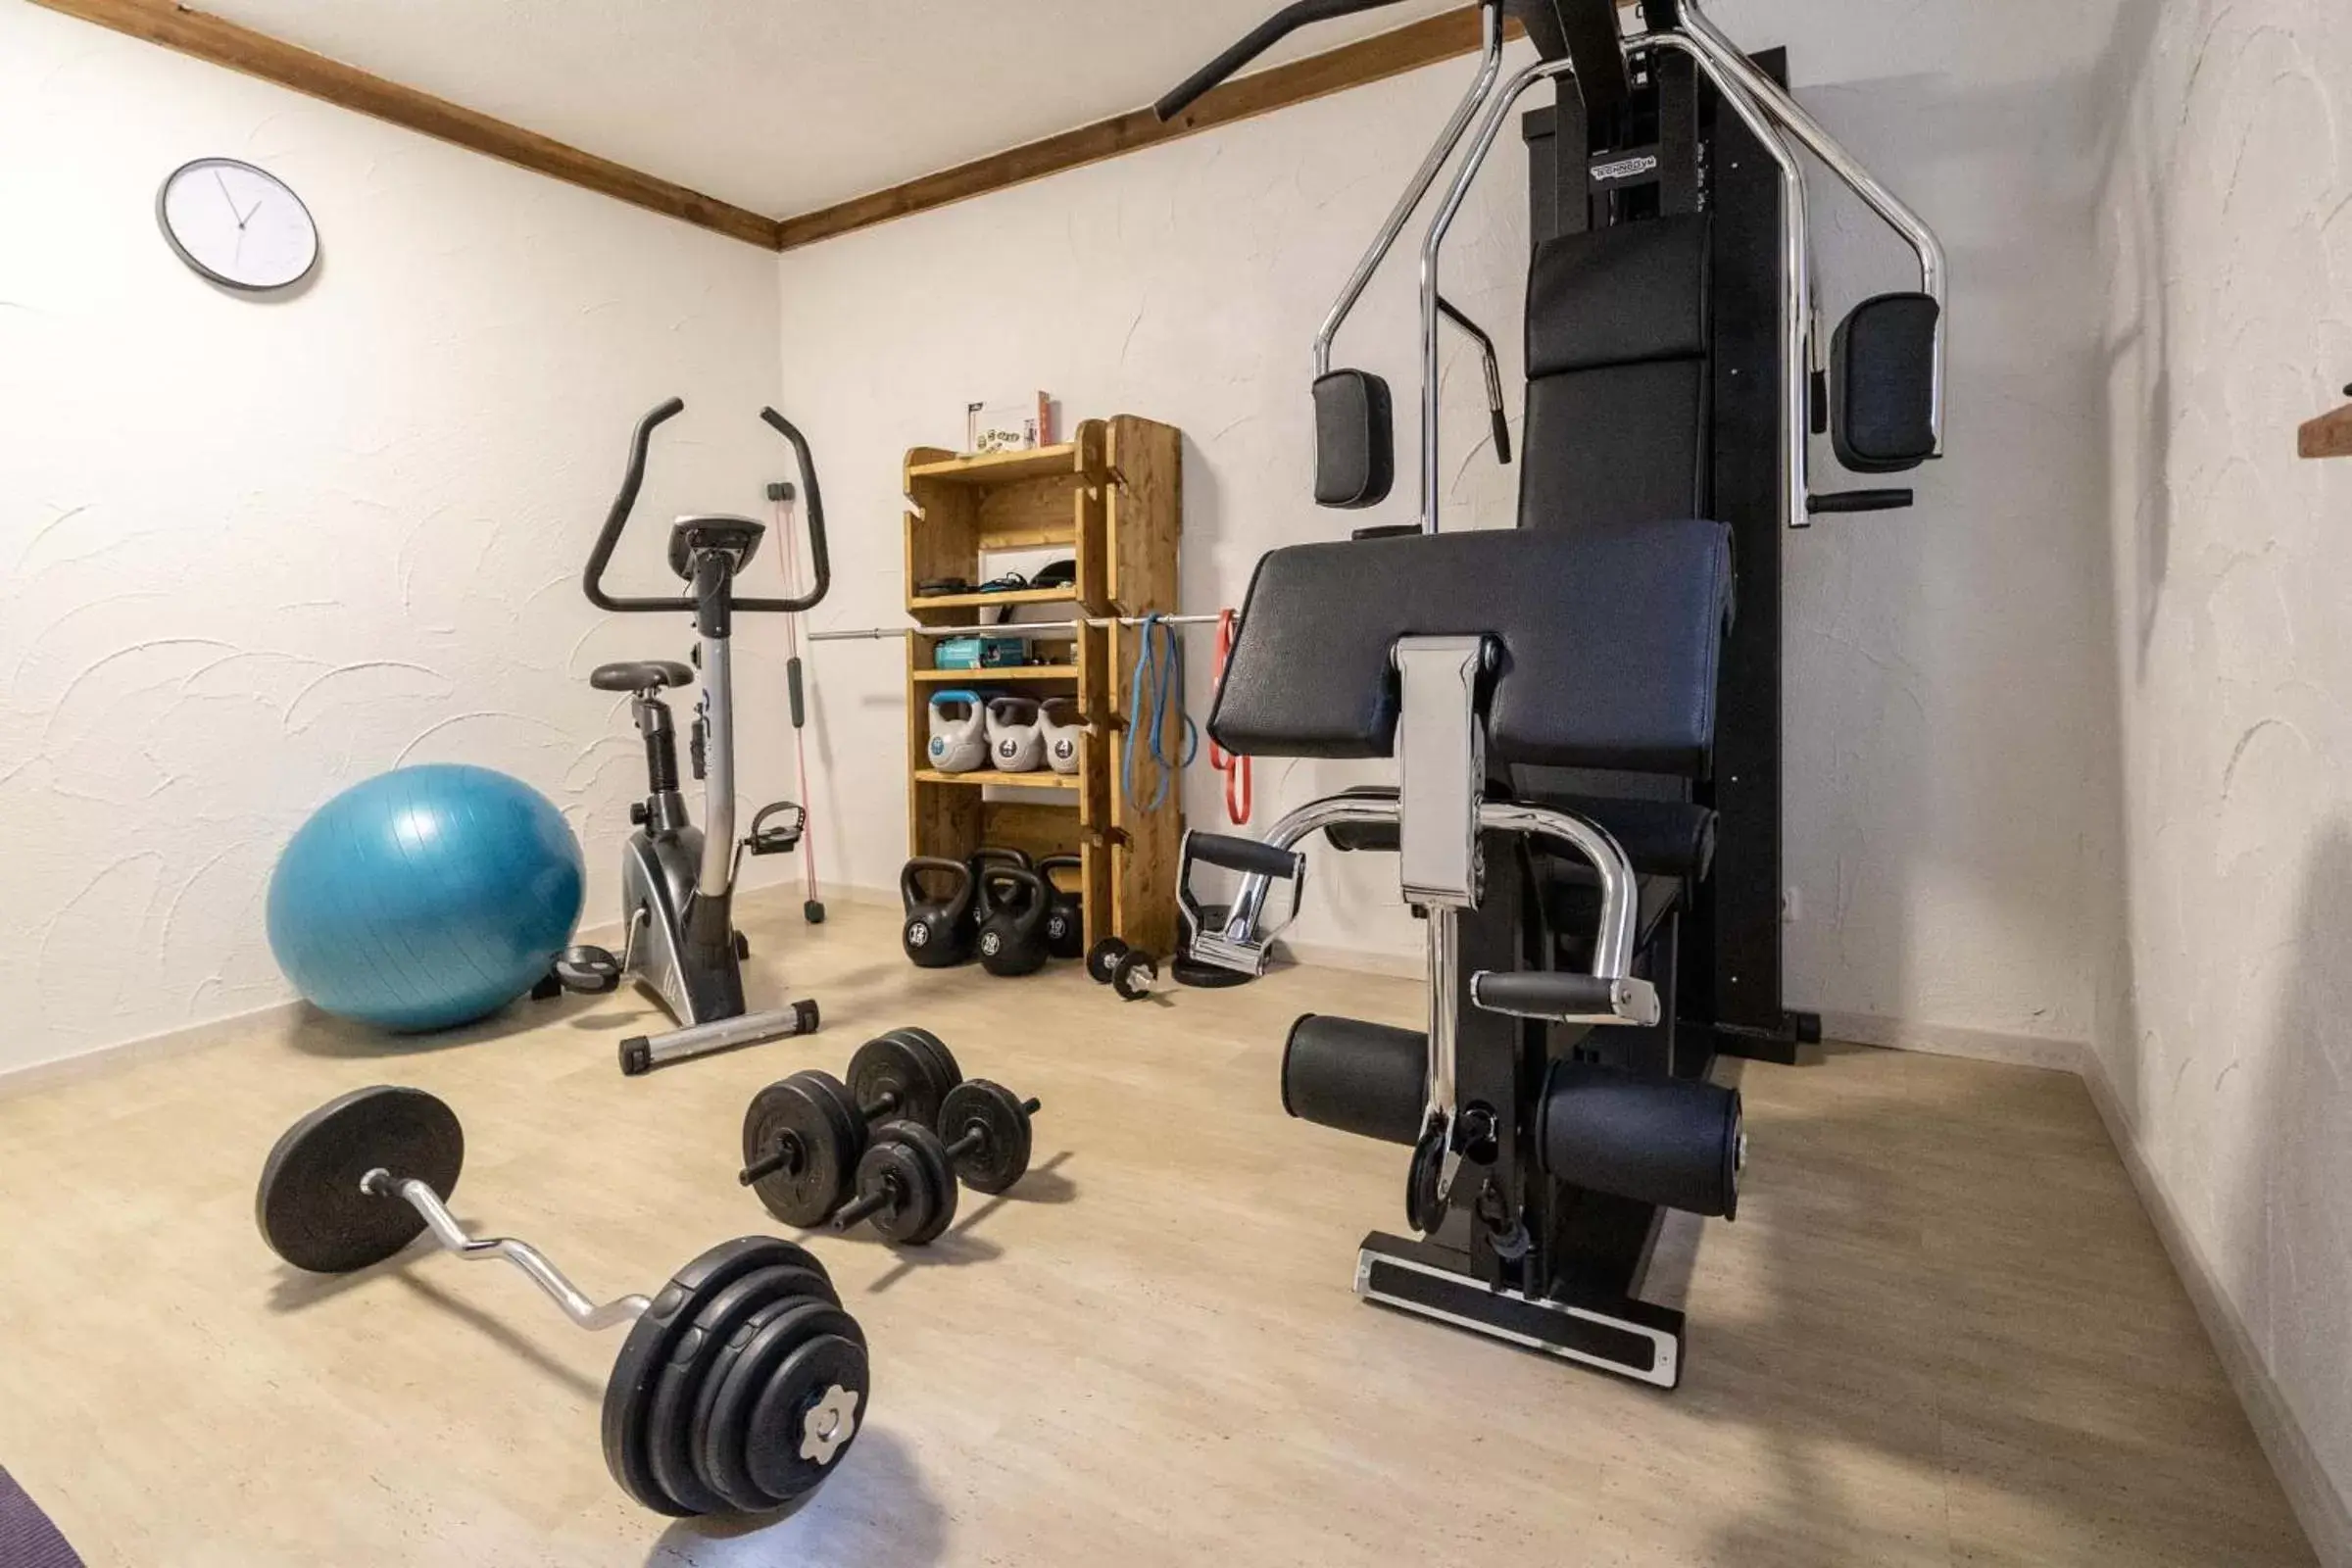 Fitness centre/facilities, Fitness Center/Facilities in Hotel Garni Brunnthaler